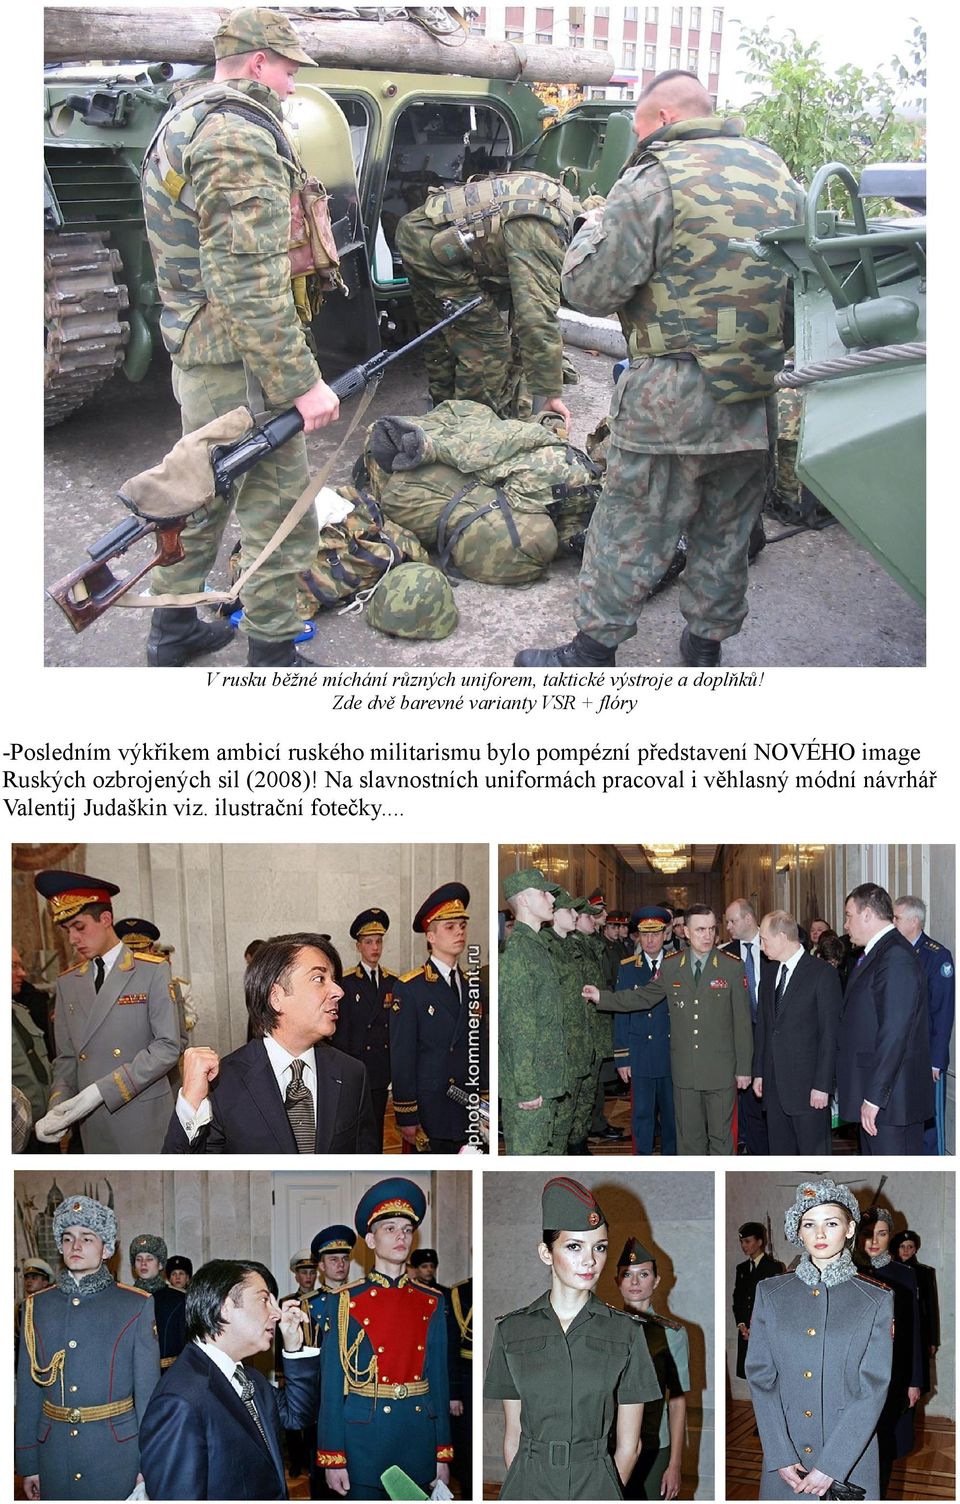 militarismu bylo pompézní představení NOVÉHO image Ruských ozbrojených sil (2008)!